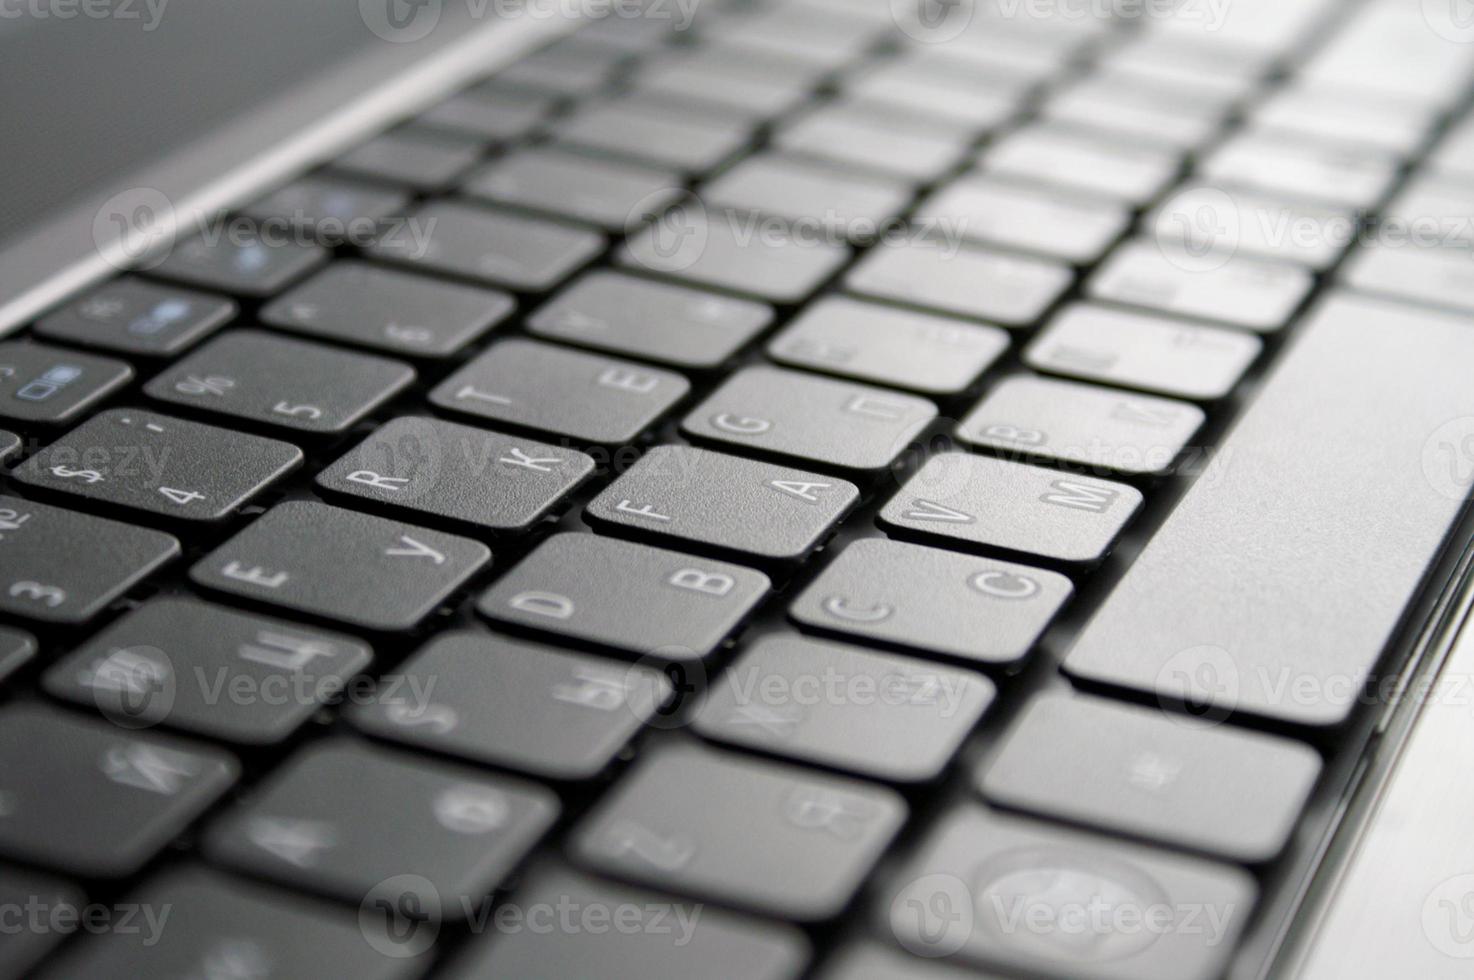 sauberer neuer laptop mit russischer tastatur foto